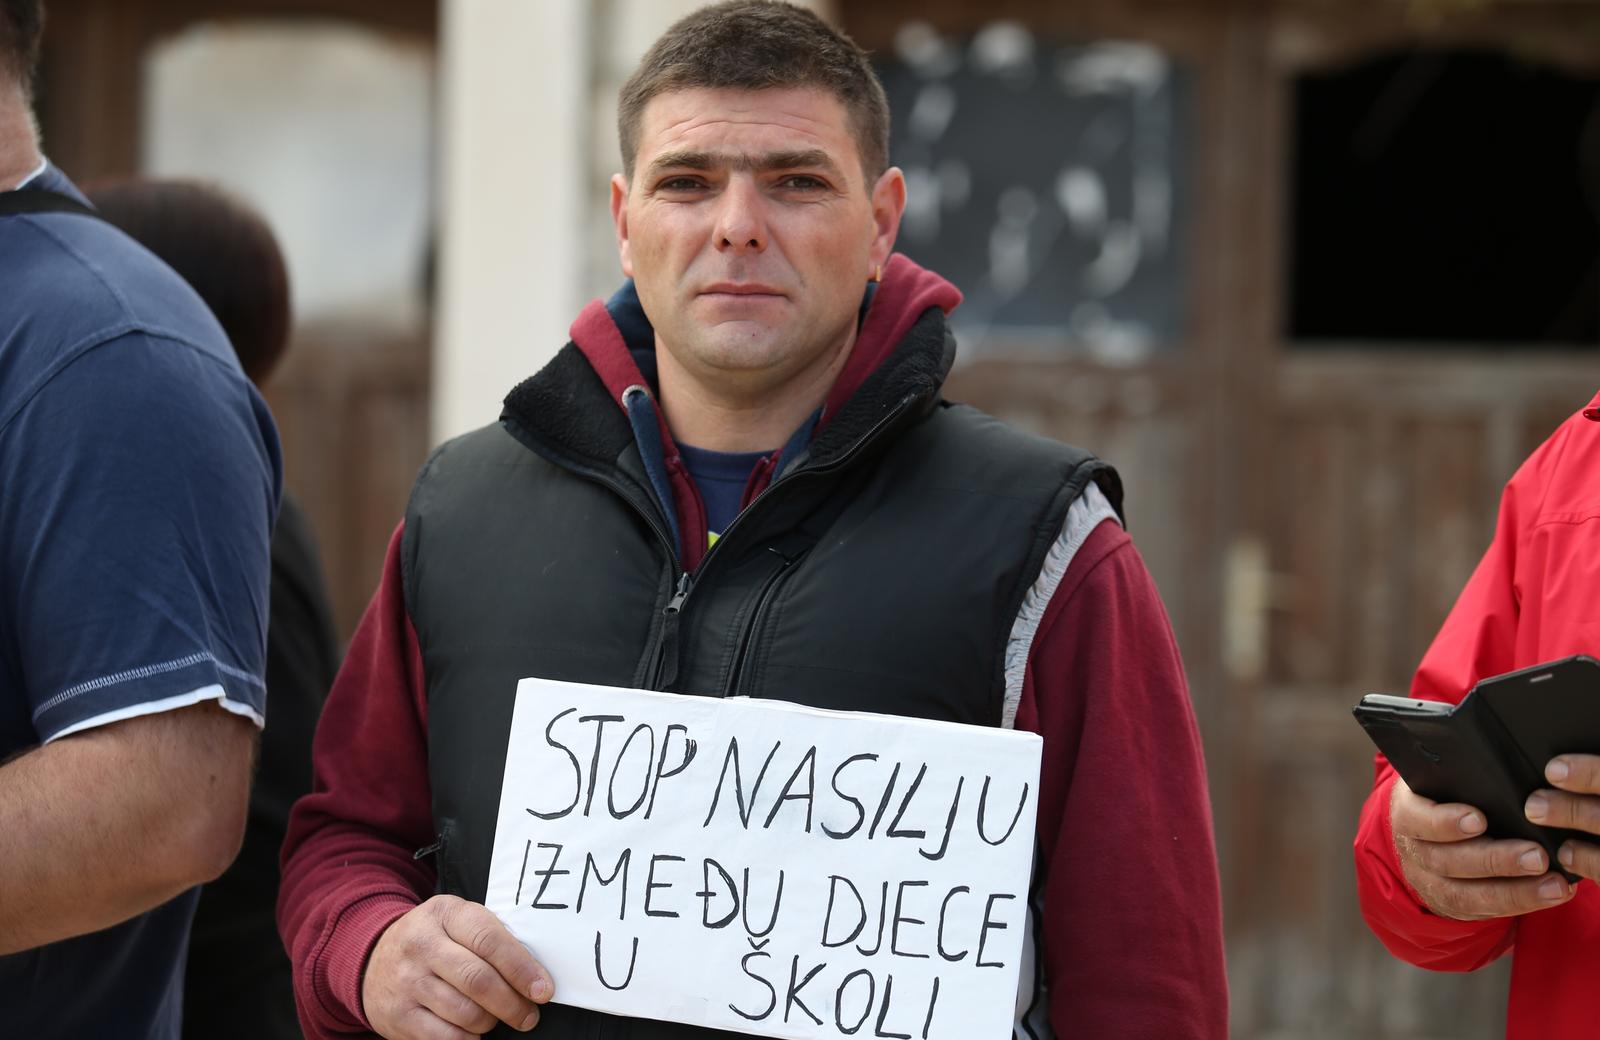 Pučišća: Slab odaziv na prosvjed protiv nasilja u školi 05.11.2018., Pucisca, Brac - Prosvjed protiv nasilja u skoli okupio je, uz roditelje djecaka zrtve vrsnjackog nasilja, tek nekoliko prosvjednika.rrPhoto: Ivo Cagalj/PIXSEL